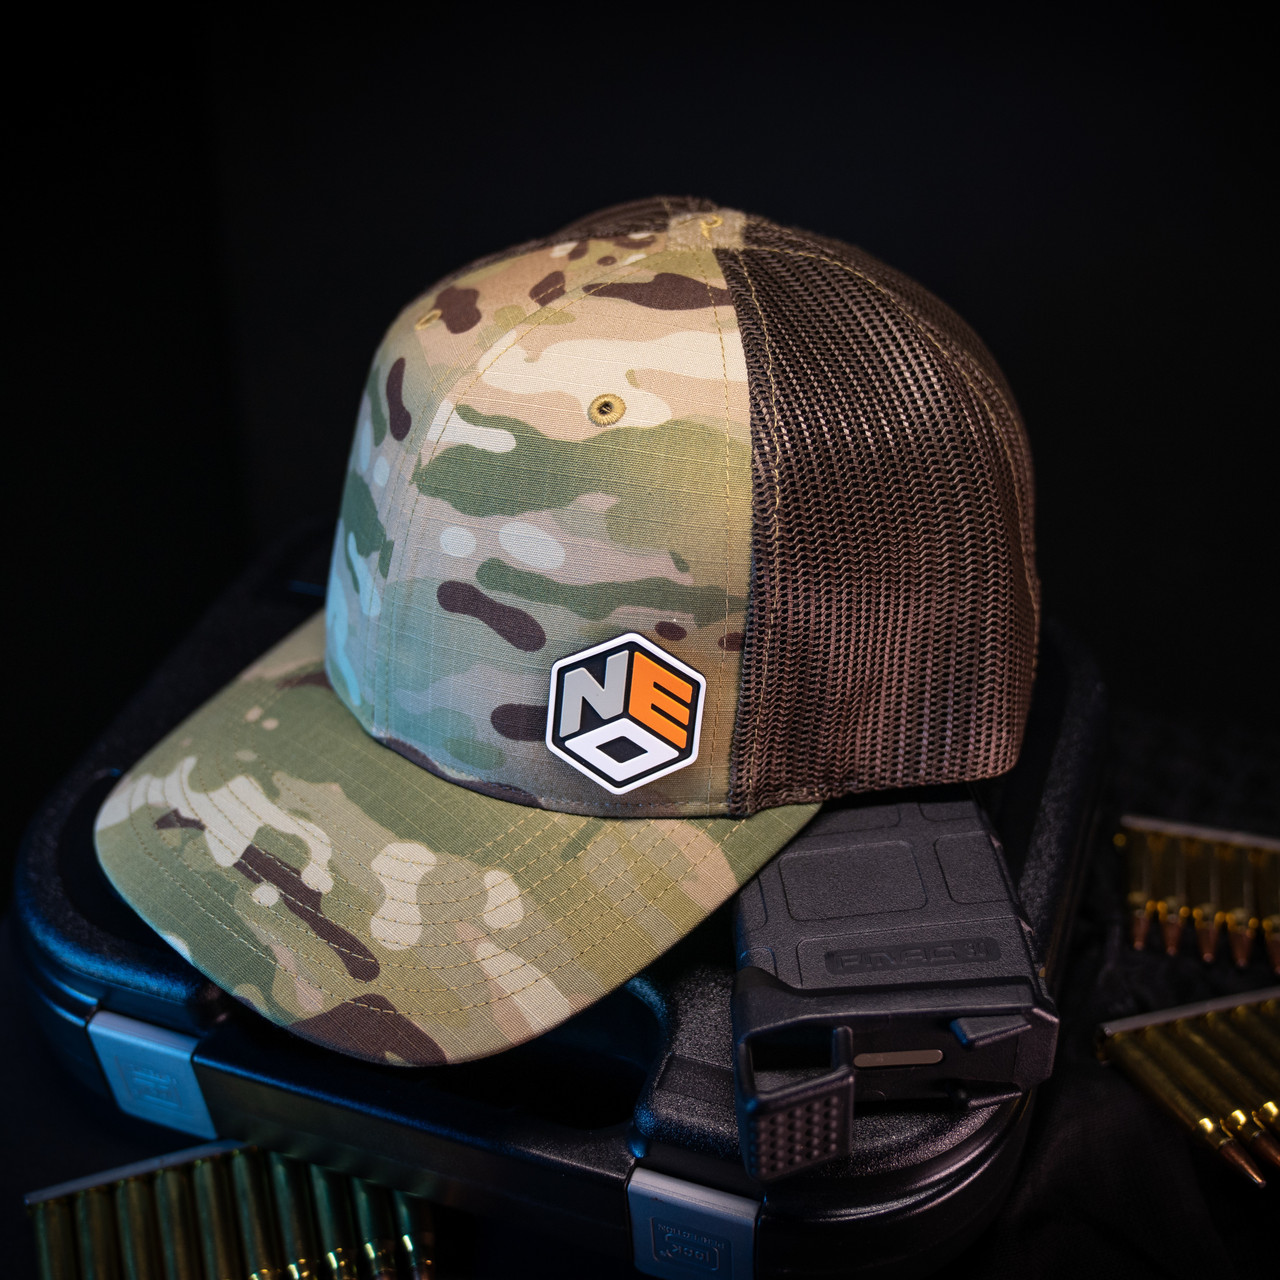 Build A Tactical Cap - Choose Hat & 2 Patches, Multicam Mesh